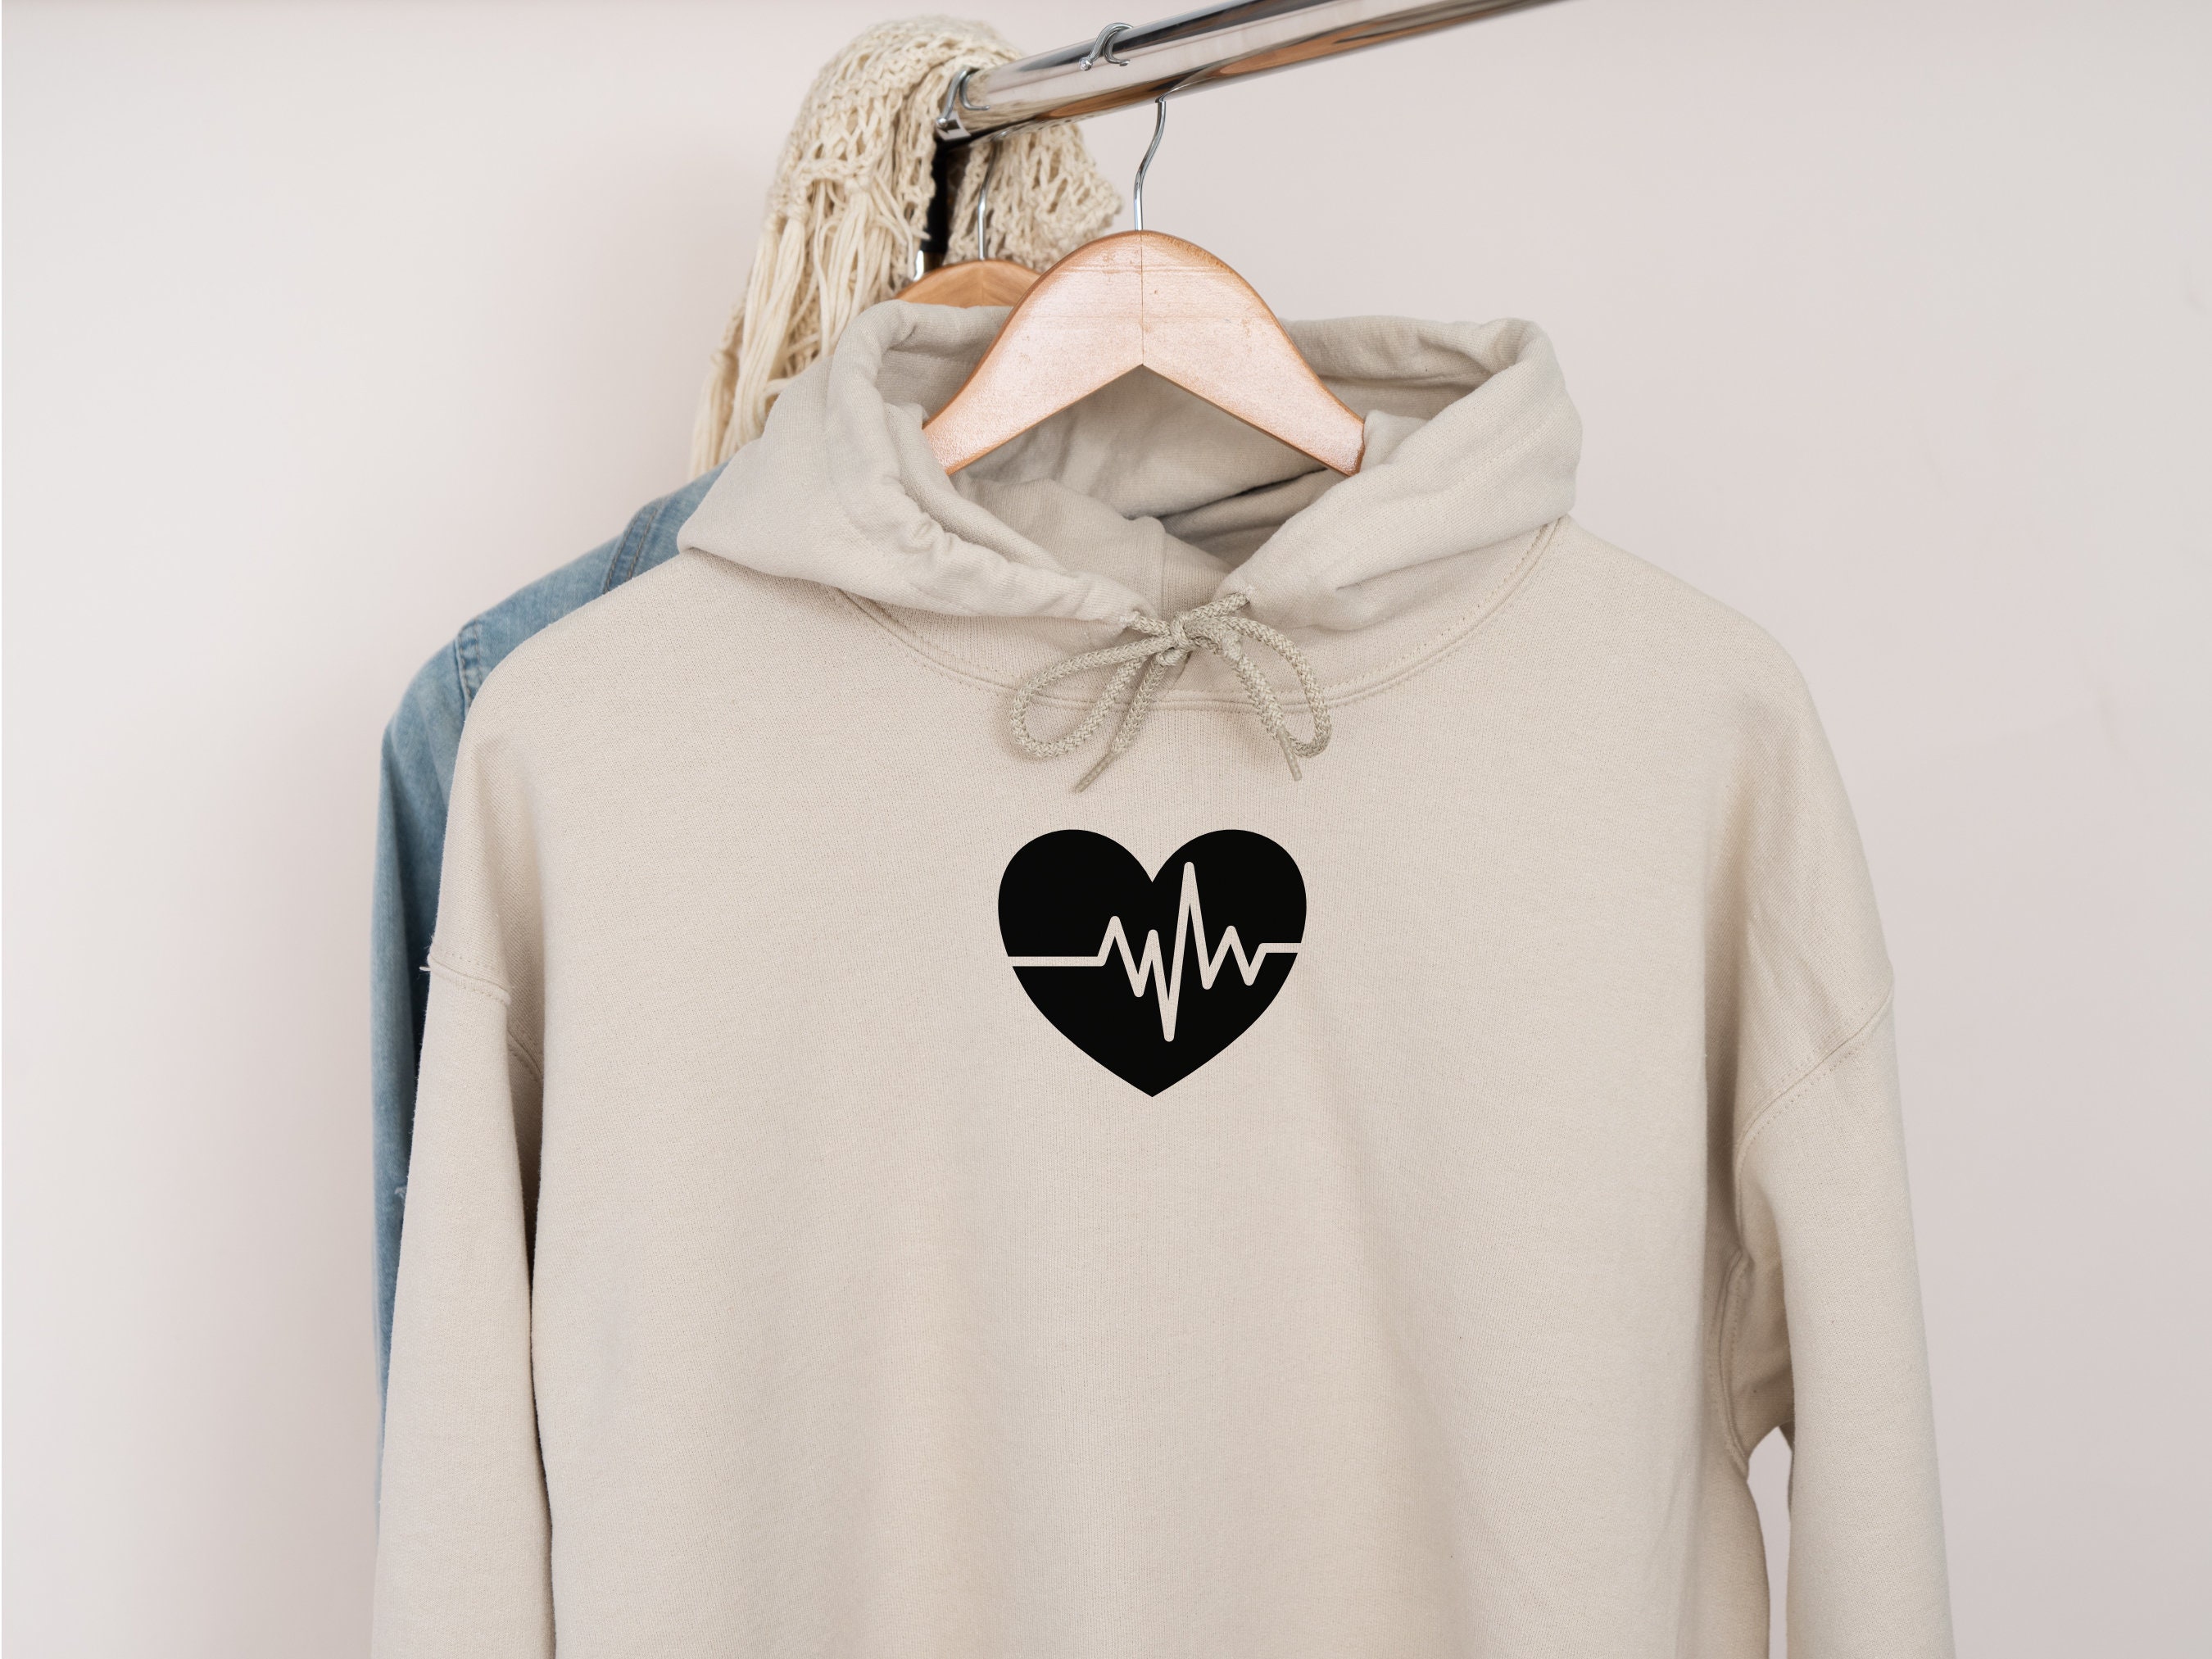 Heartbeat SVG, Heartbeat Silhouette, Heartbeat Clipart, Heartbeat Cut ...